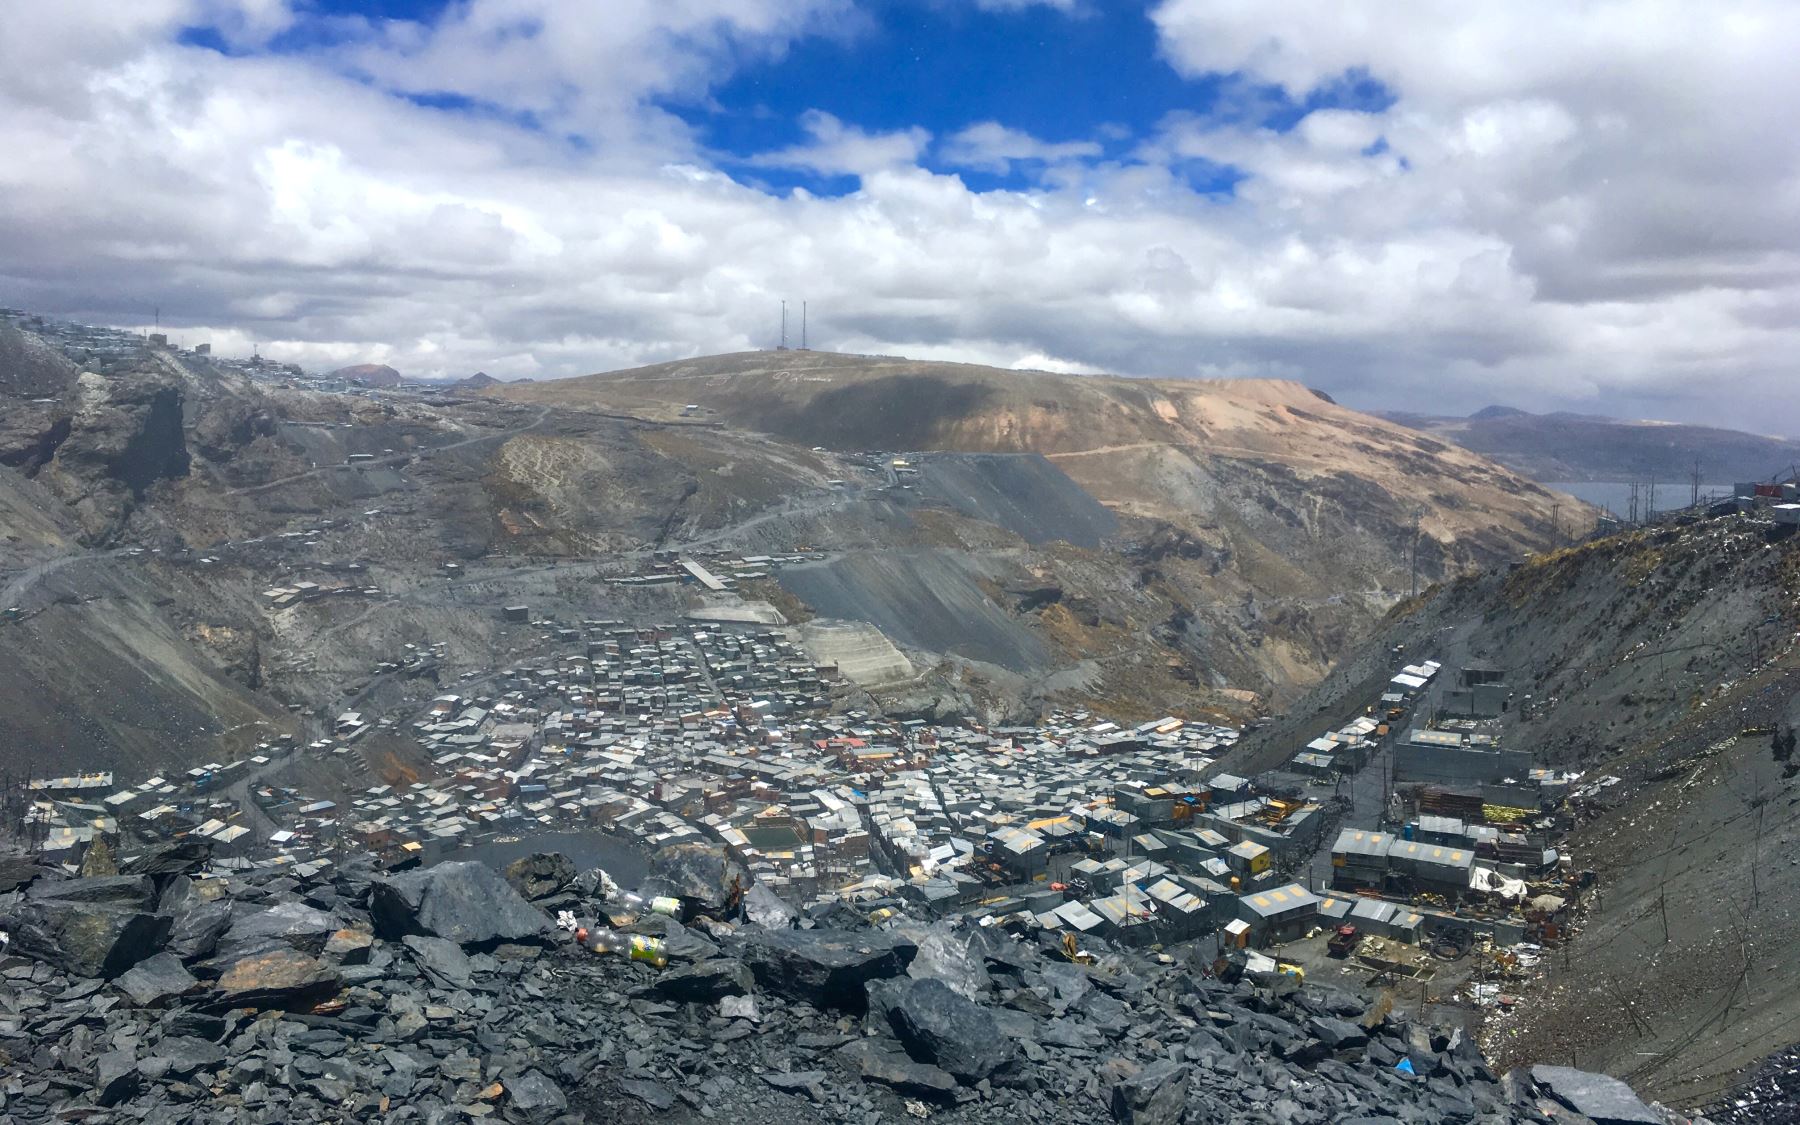 06/11/2018   Esta fotografía tomada el 6 de octubre de 2018 y publicada el 5 de noviembre de 2018 por Inserm muestra una vista general de La Rinconada, la ciudad más alta del mundo (5300 m). Foto: AFP